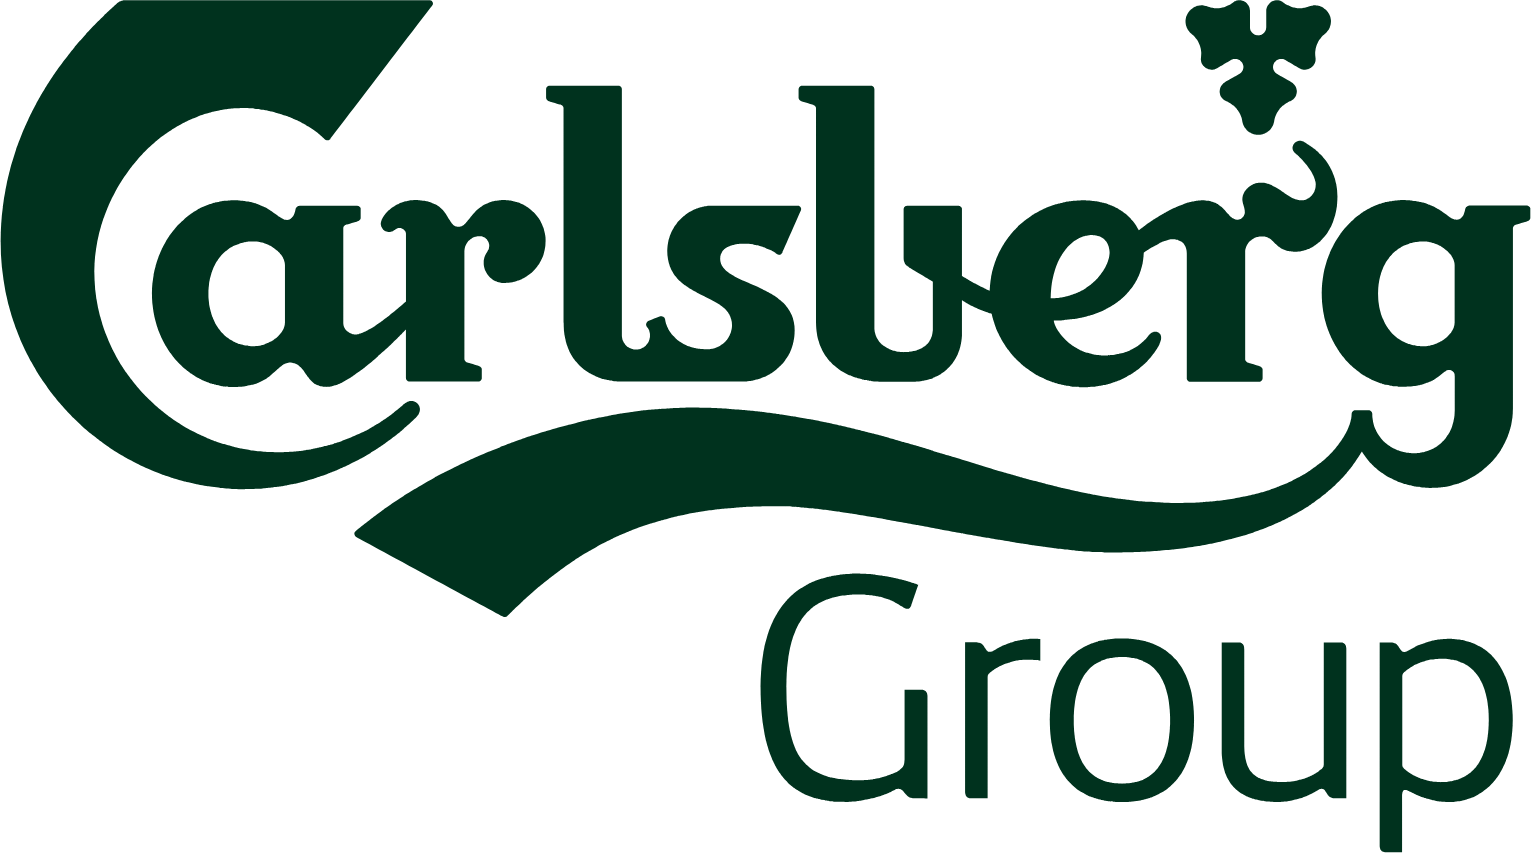 Carlsberg logo in transparent PNG format